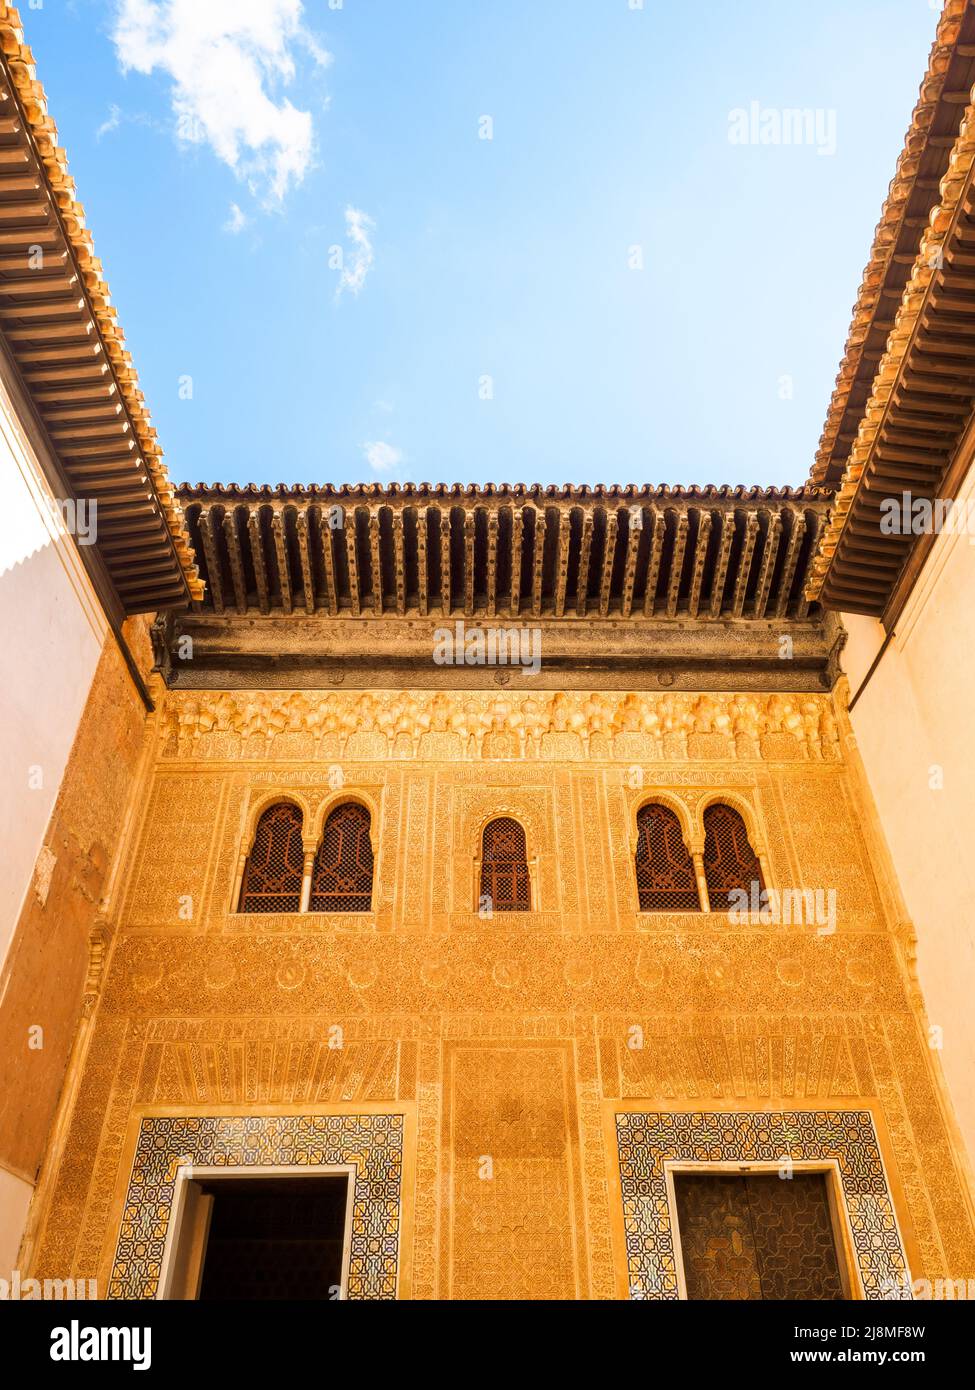 Façade de bâtiment dans la cour du Mexiar dans le complexe des palais royaux de Nasrid - complexe de l'Alhambra - Grenade, Espagne Banque D'Images